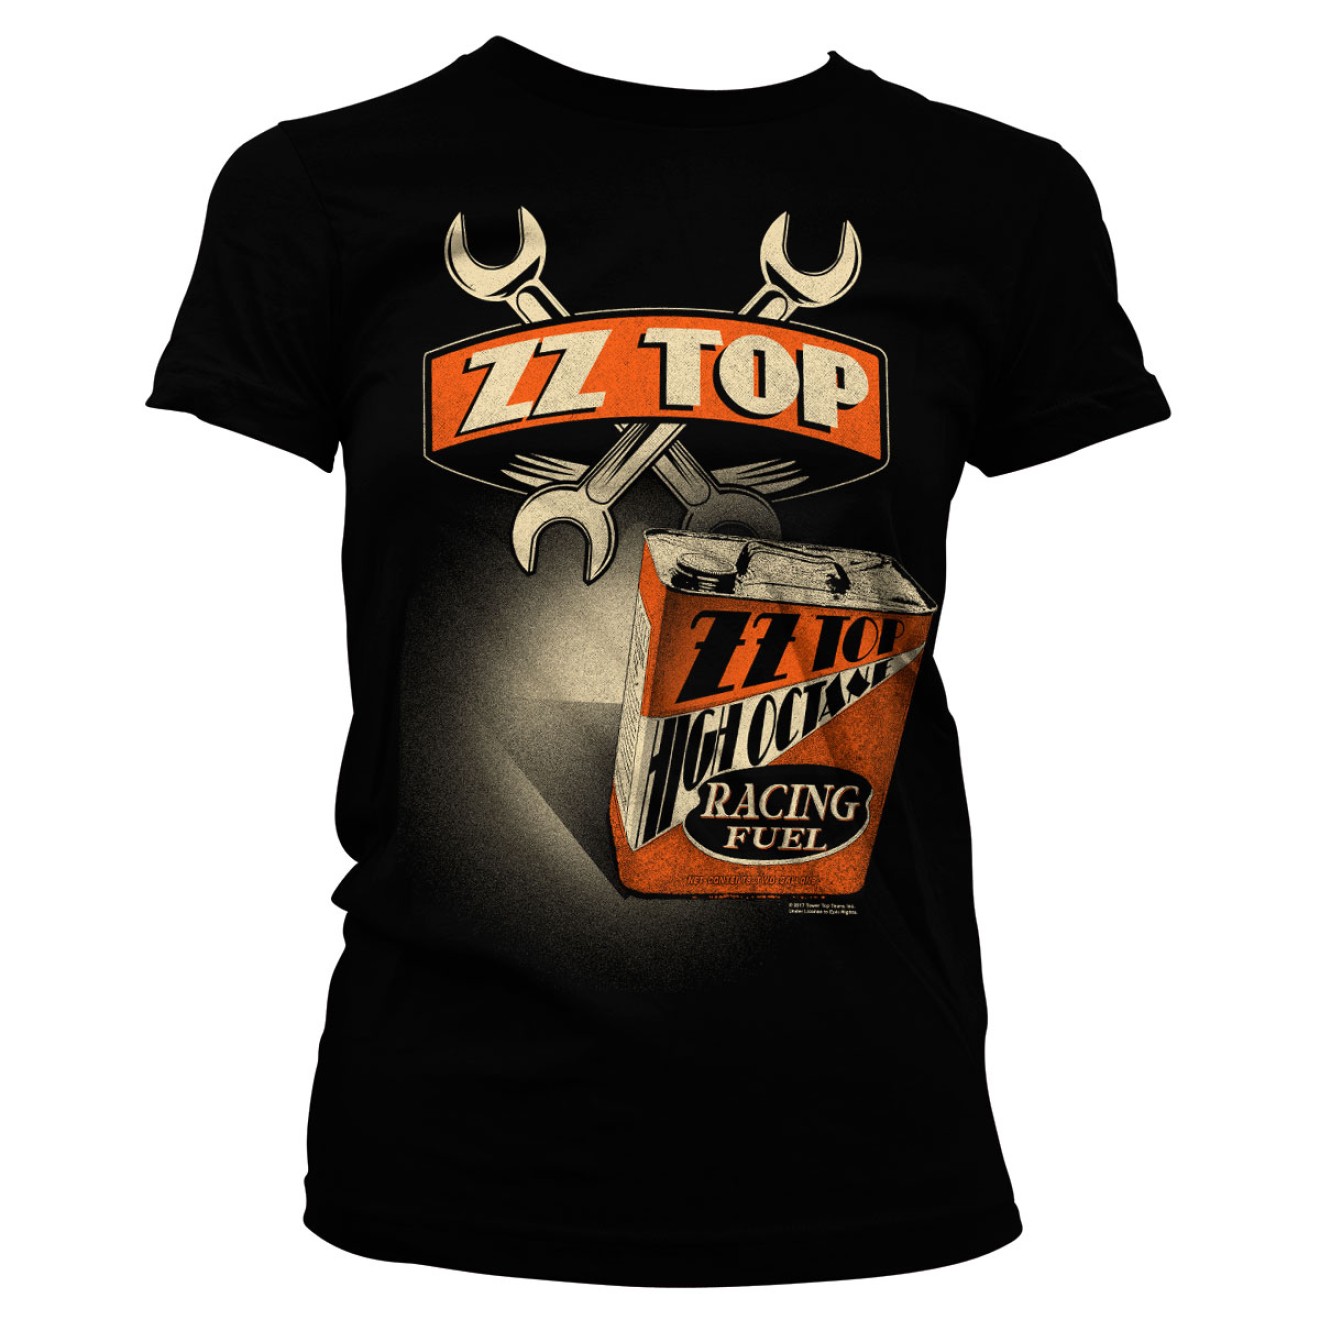 ZZ-Top High Octane Racing Fuel Girly Tee Frauen Top